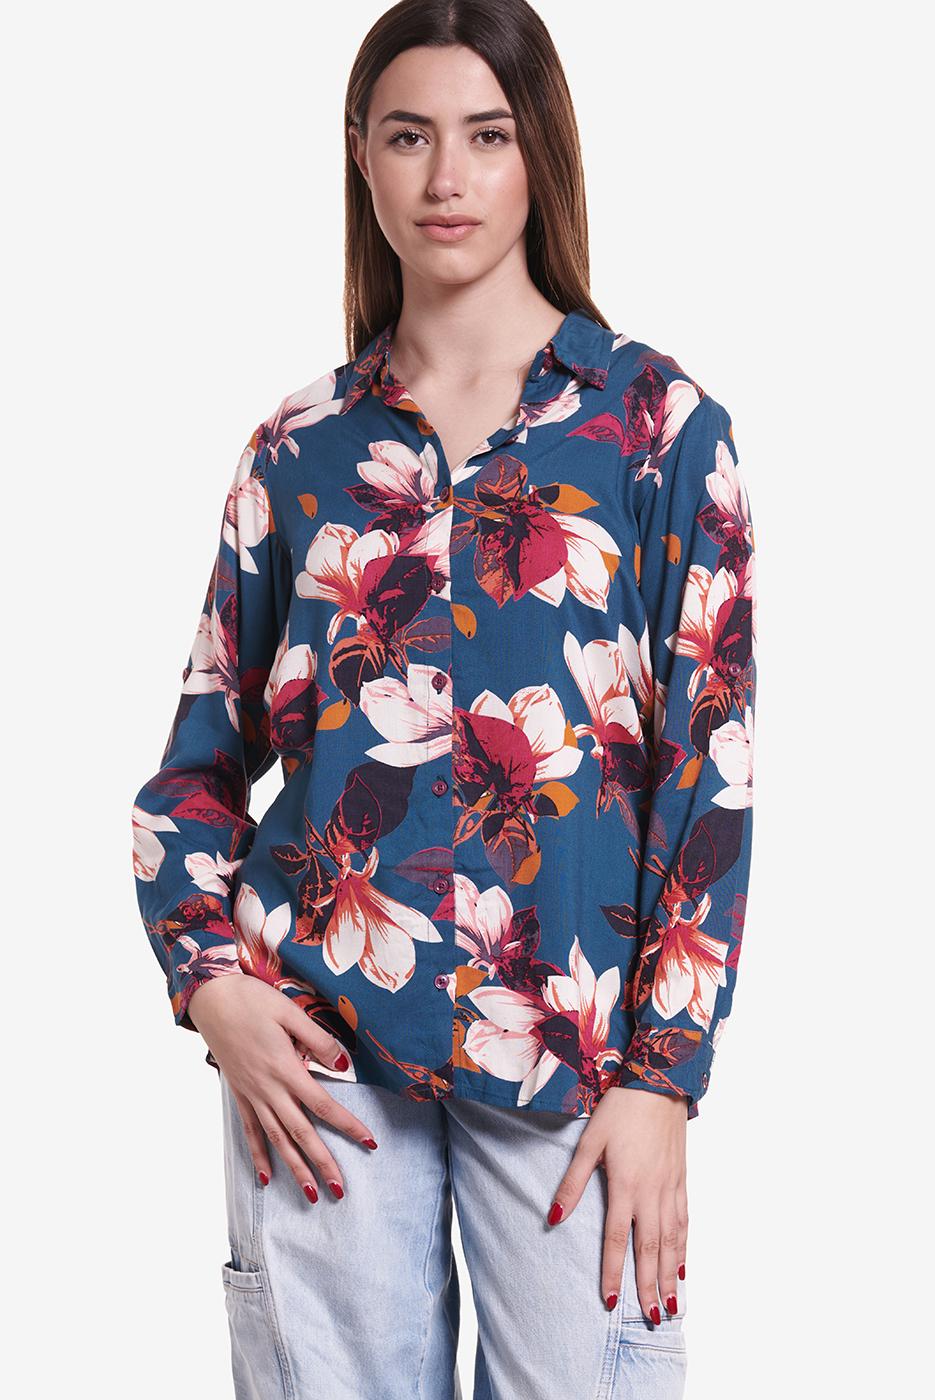 camisa de mujer con flores grandes